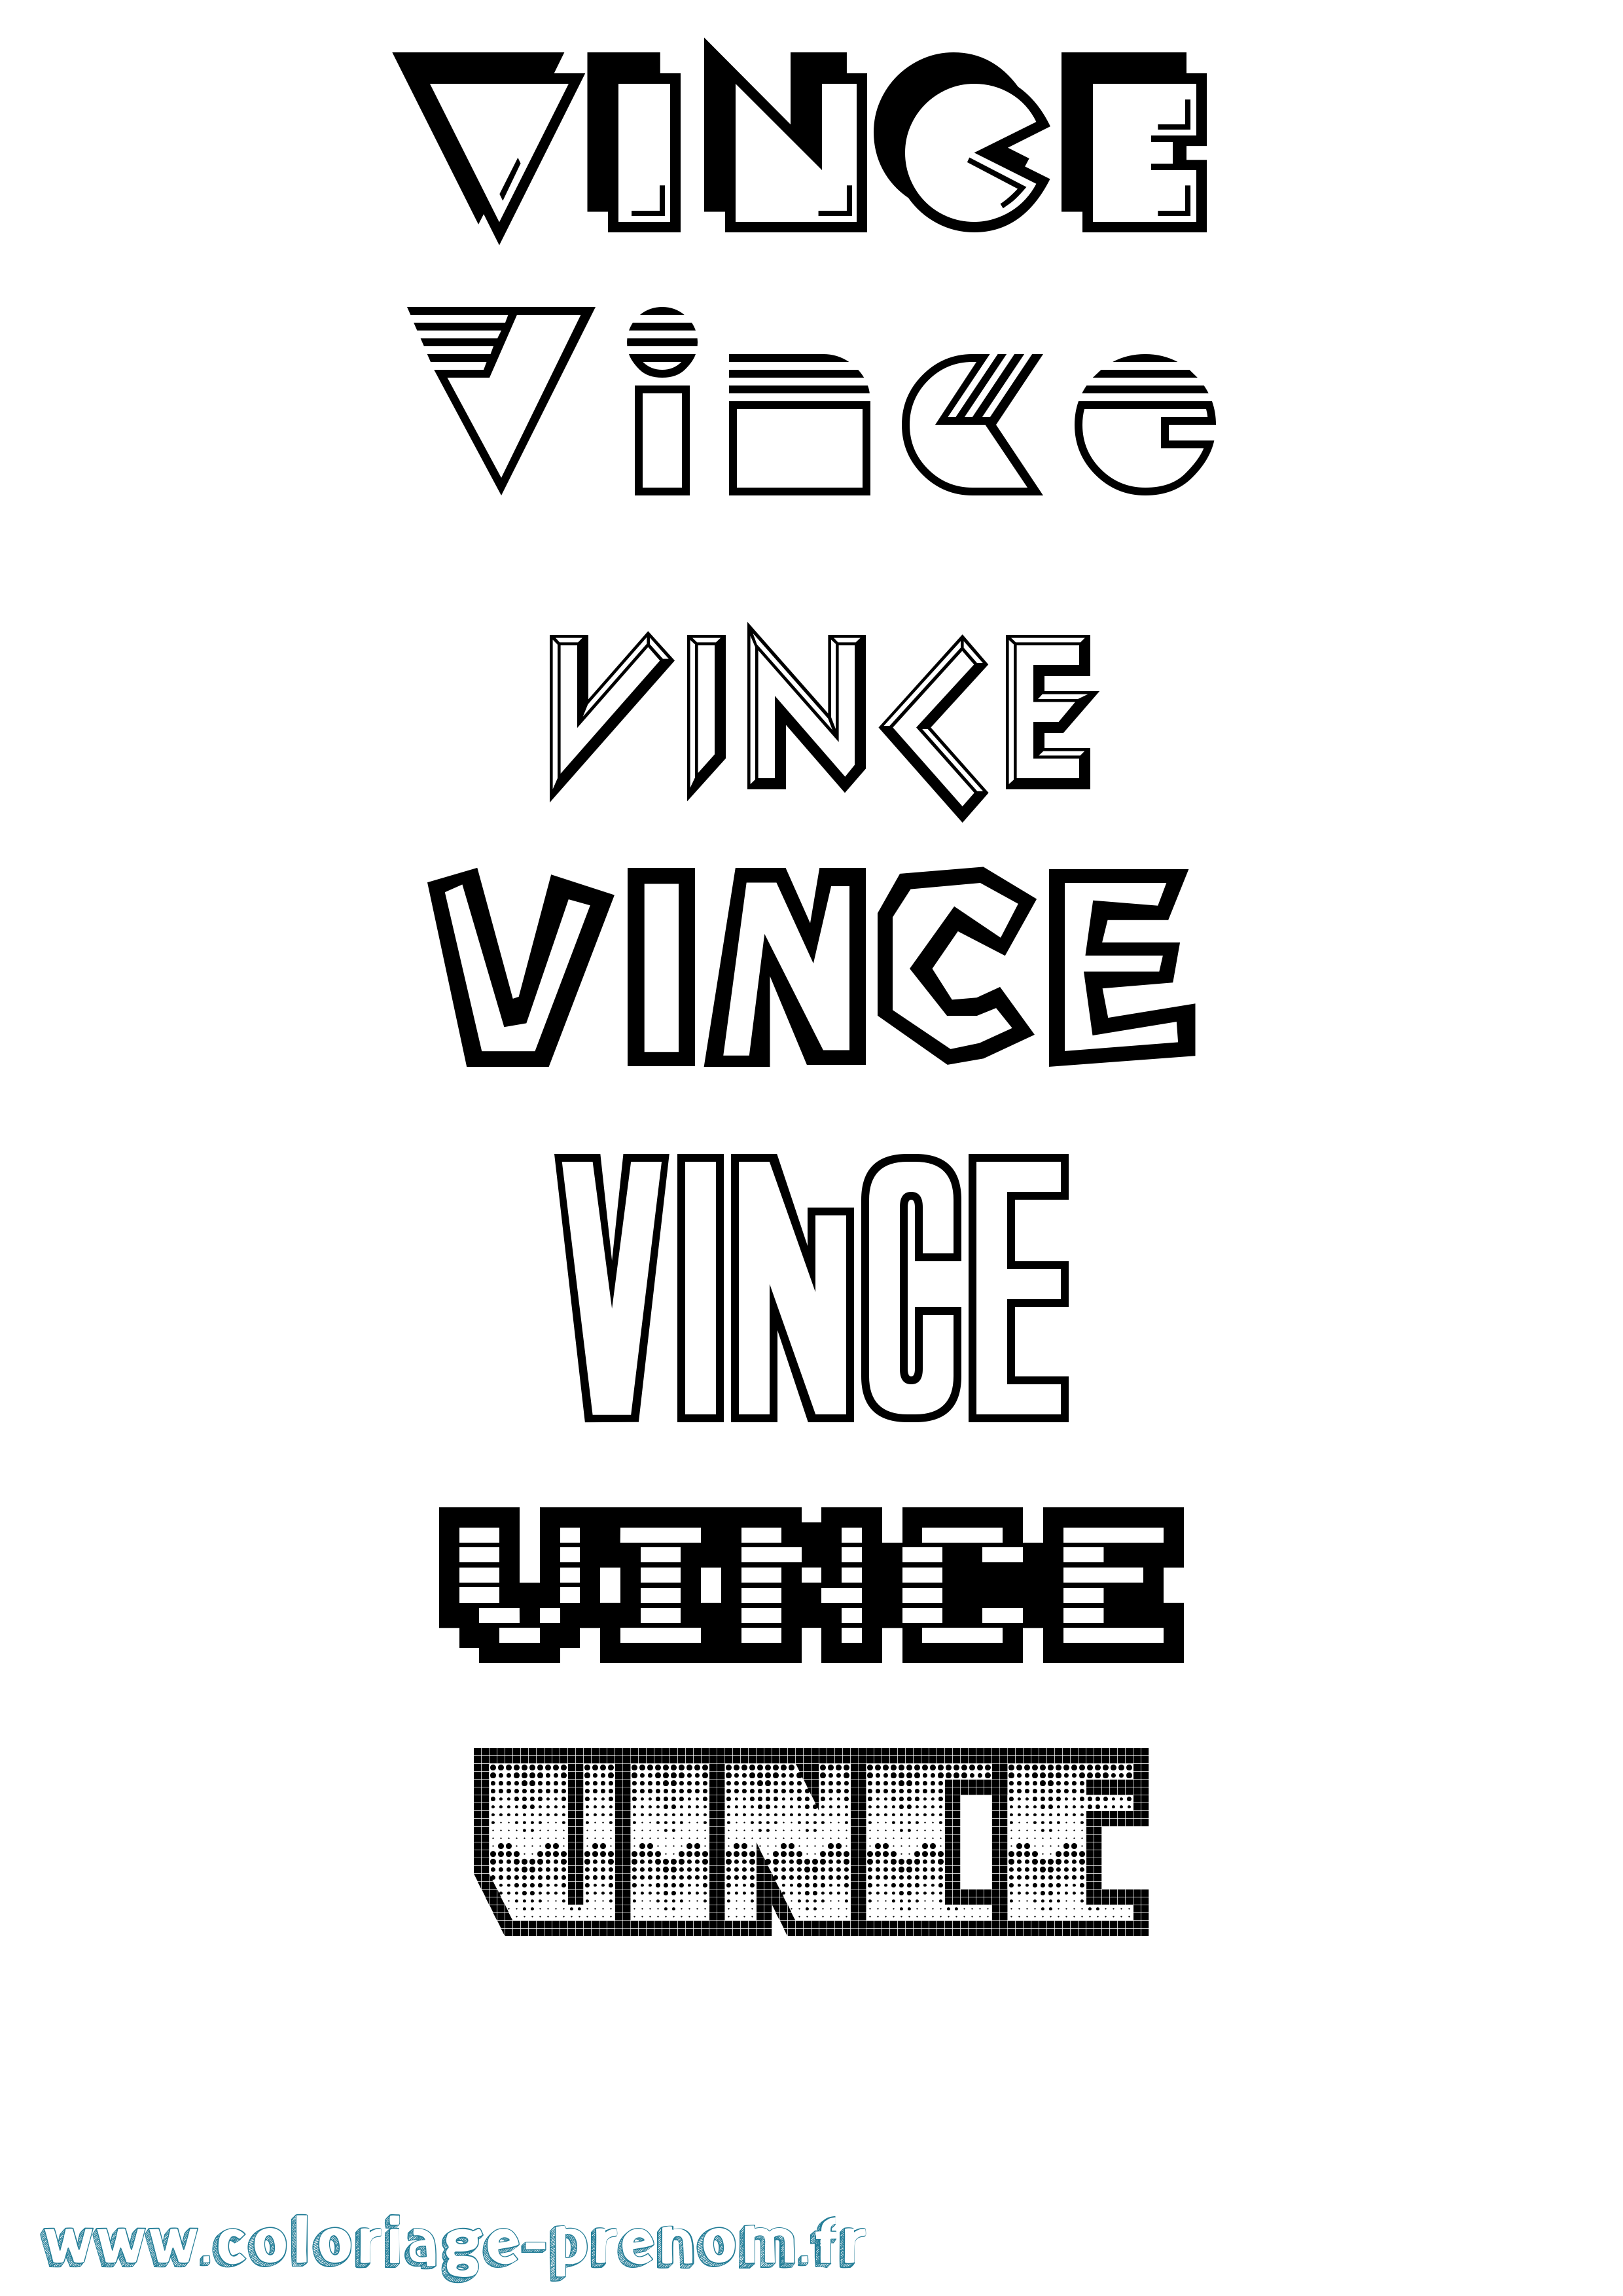 Coloriage prénom Vince Jeux Vidéos